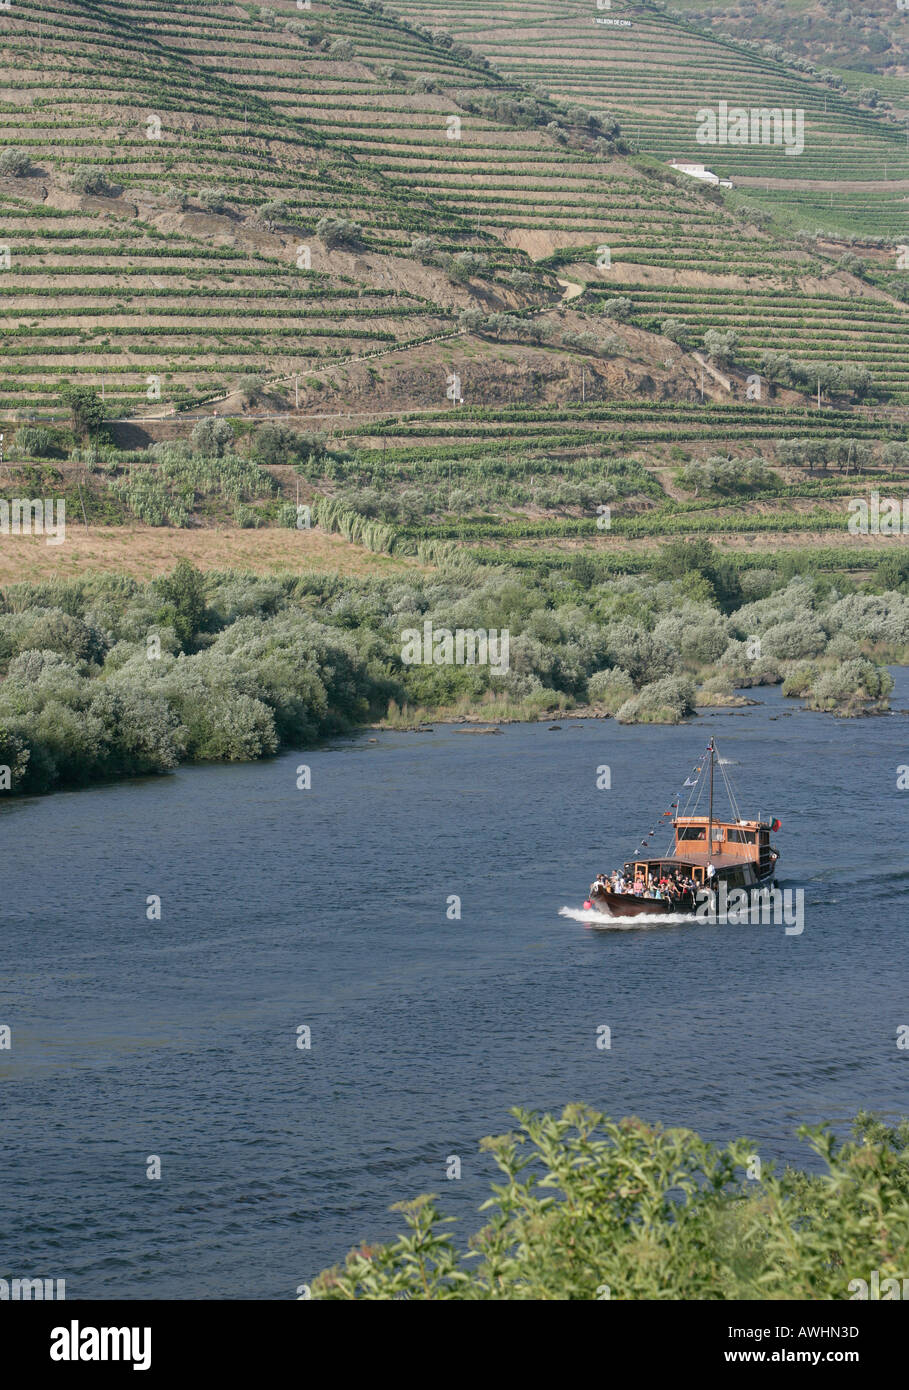 Ein Ausflugsschiff der traditionellen Portwein Stil mit Touristen und aus den Augen sehen-Ers an Bord Motoren auf dem Fluss Douro in Portugal. Stockfoto